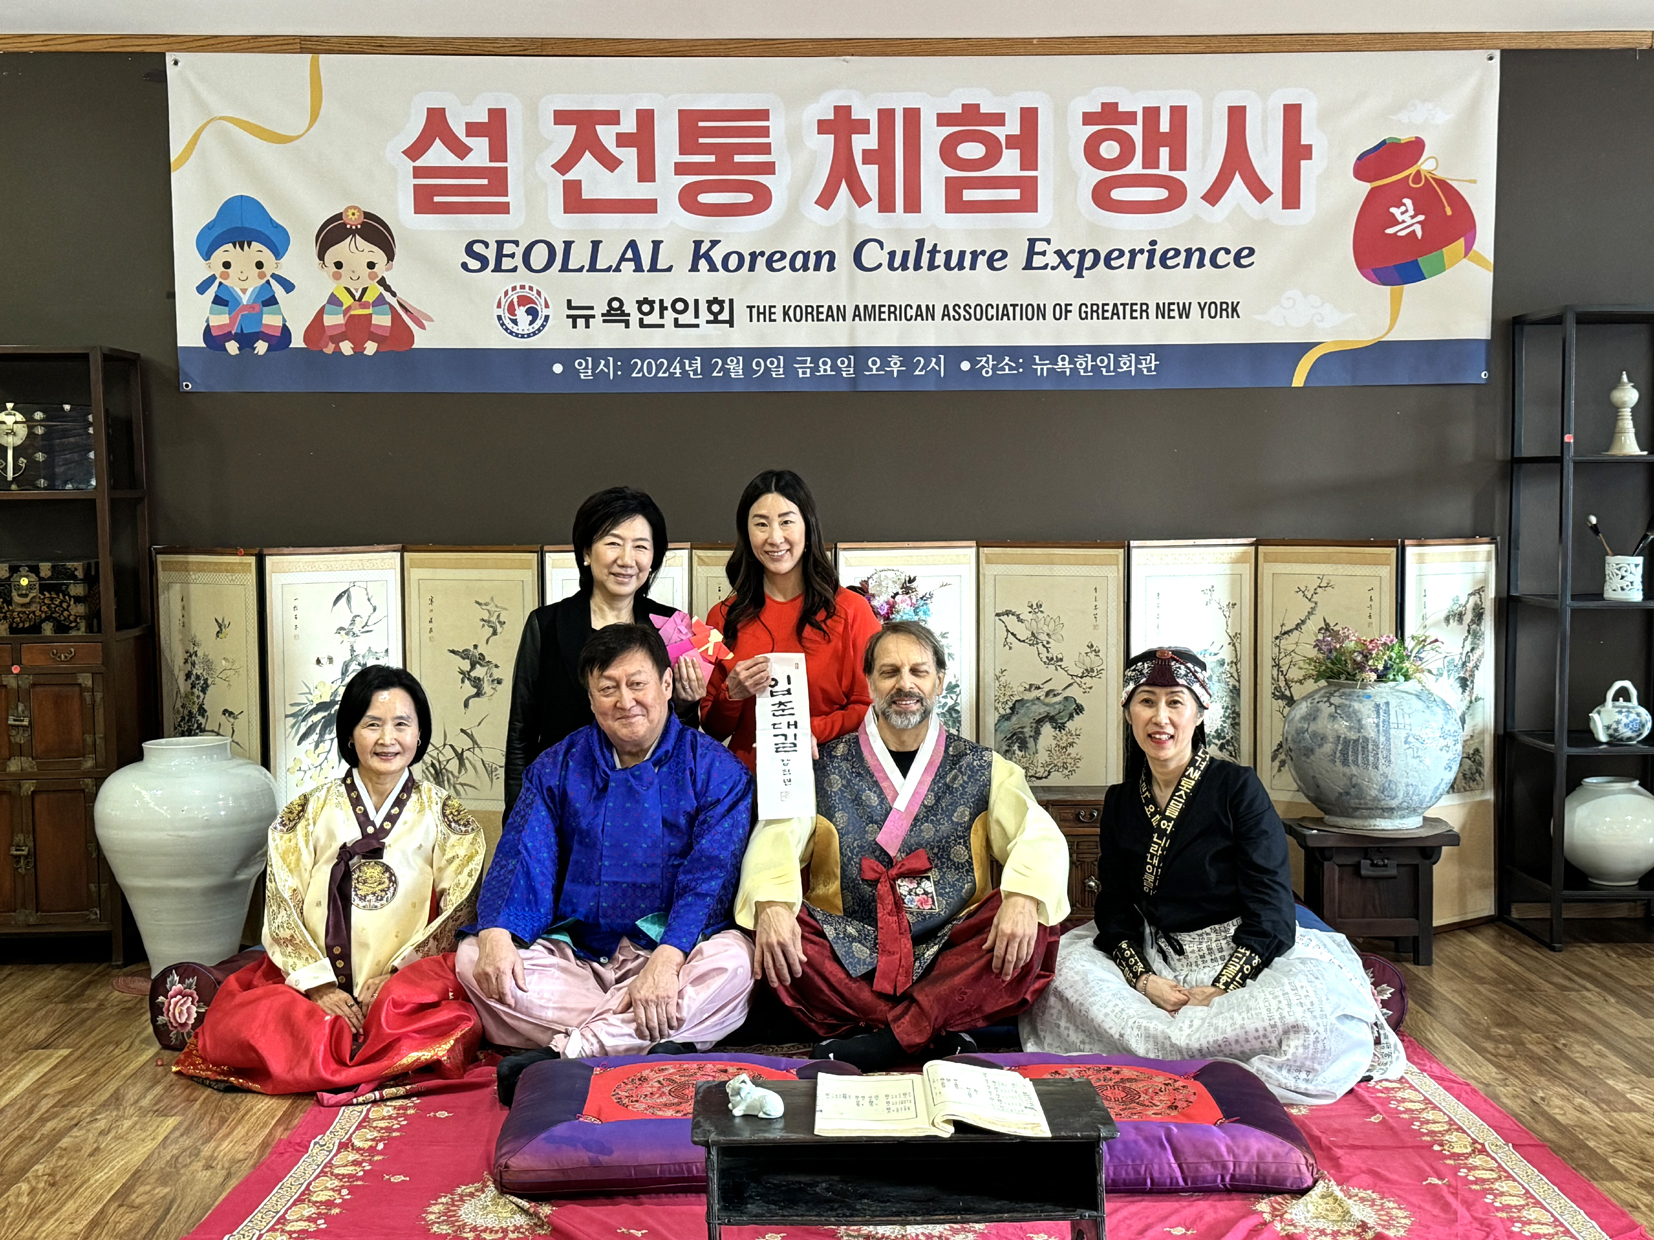 뉴욕한인회는 9일 차세대와 타민족을 대상으로 한국의 명절인 설의 의미와 문화를 알리기 위해 ‘뉴욕한인회 설 전통 체험행사’를 실시했다. [뉴욕한인회]